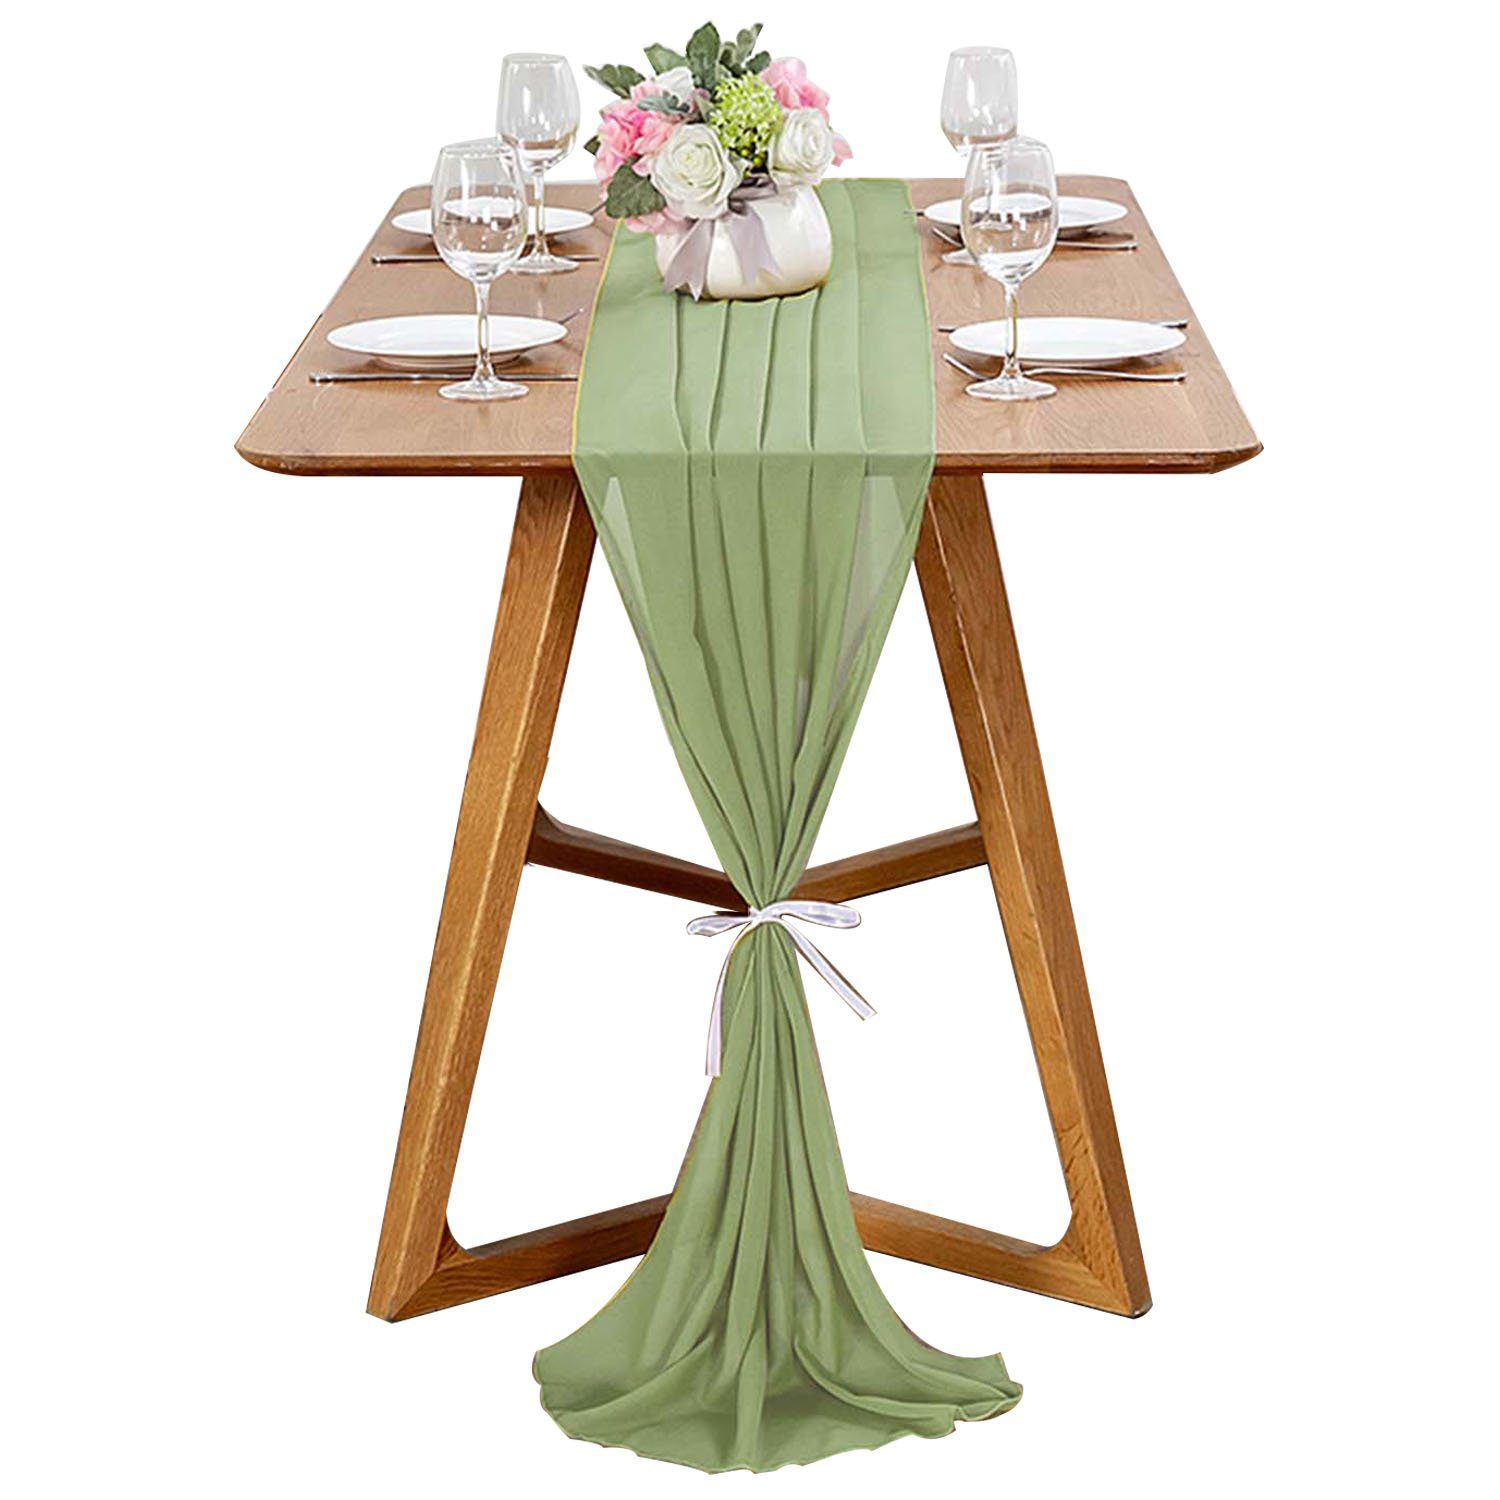 MAGICSHE Tischläufer Romantischer Chiffon Tischdeko, Modern Abwaschbar 3m Grün